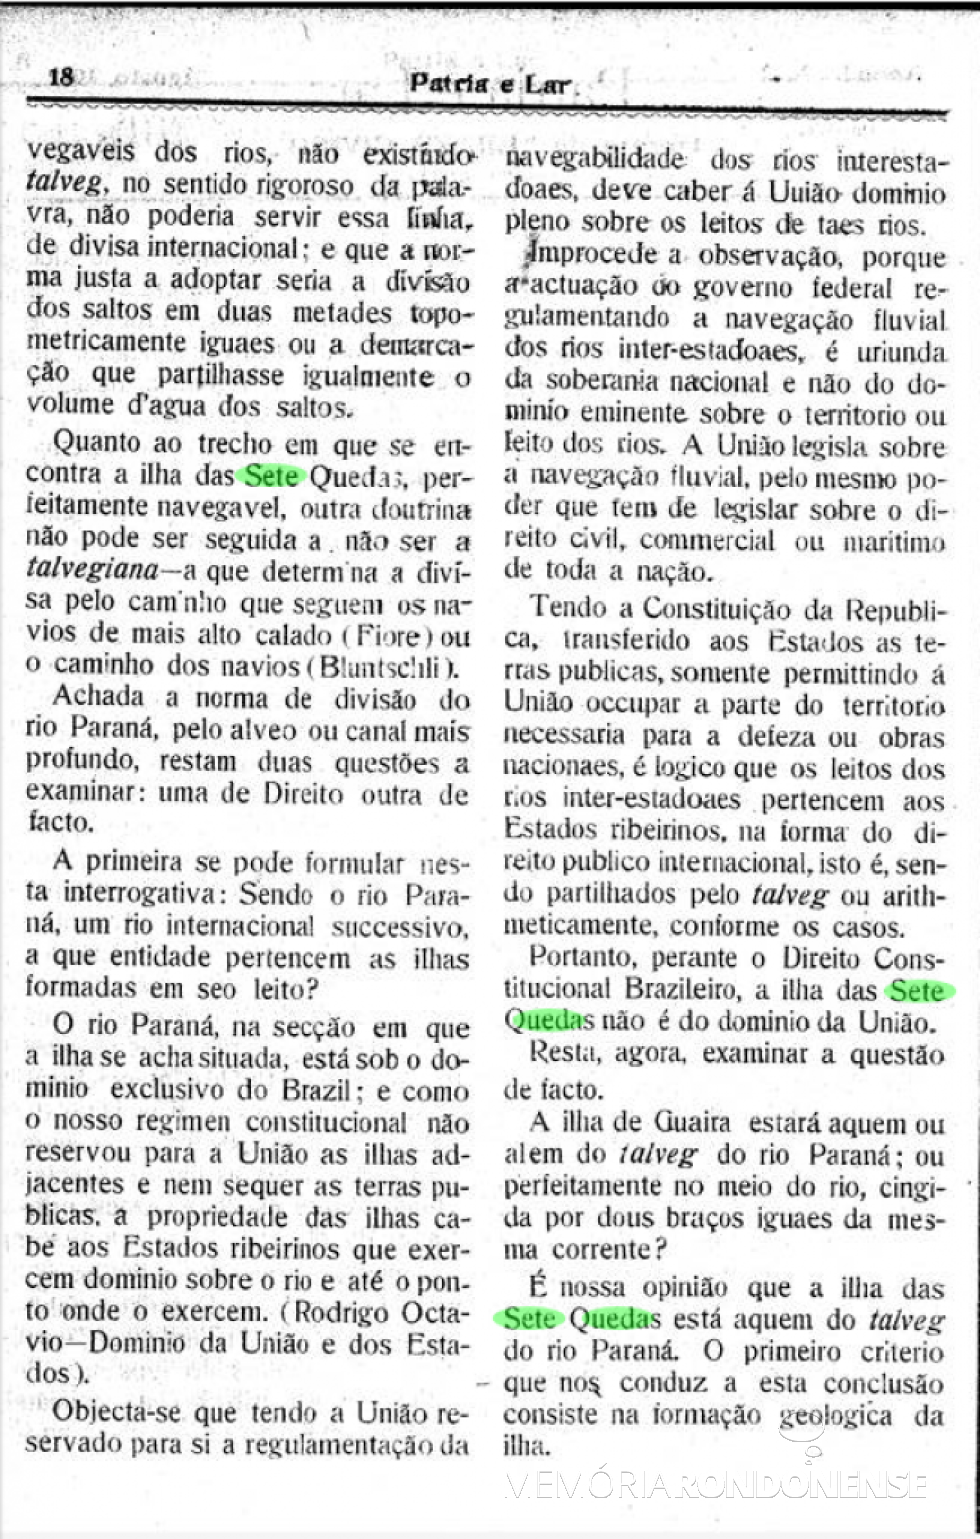 || Página 2 do parecer de Ermelino de Leão sobre a Ilha Grande, em Guaíra, publicado em agosto de 1912.
Imagem: Acervo Biblioteca Nacional Digital - FOTO 6 - 